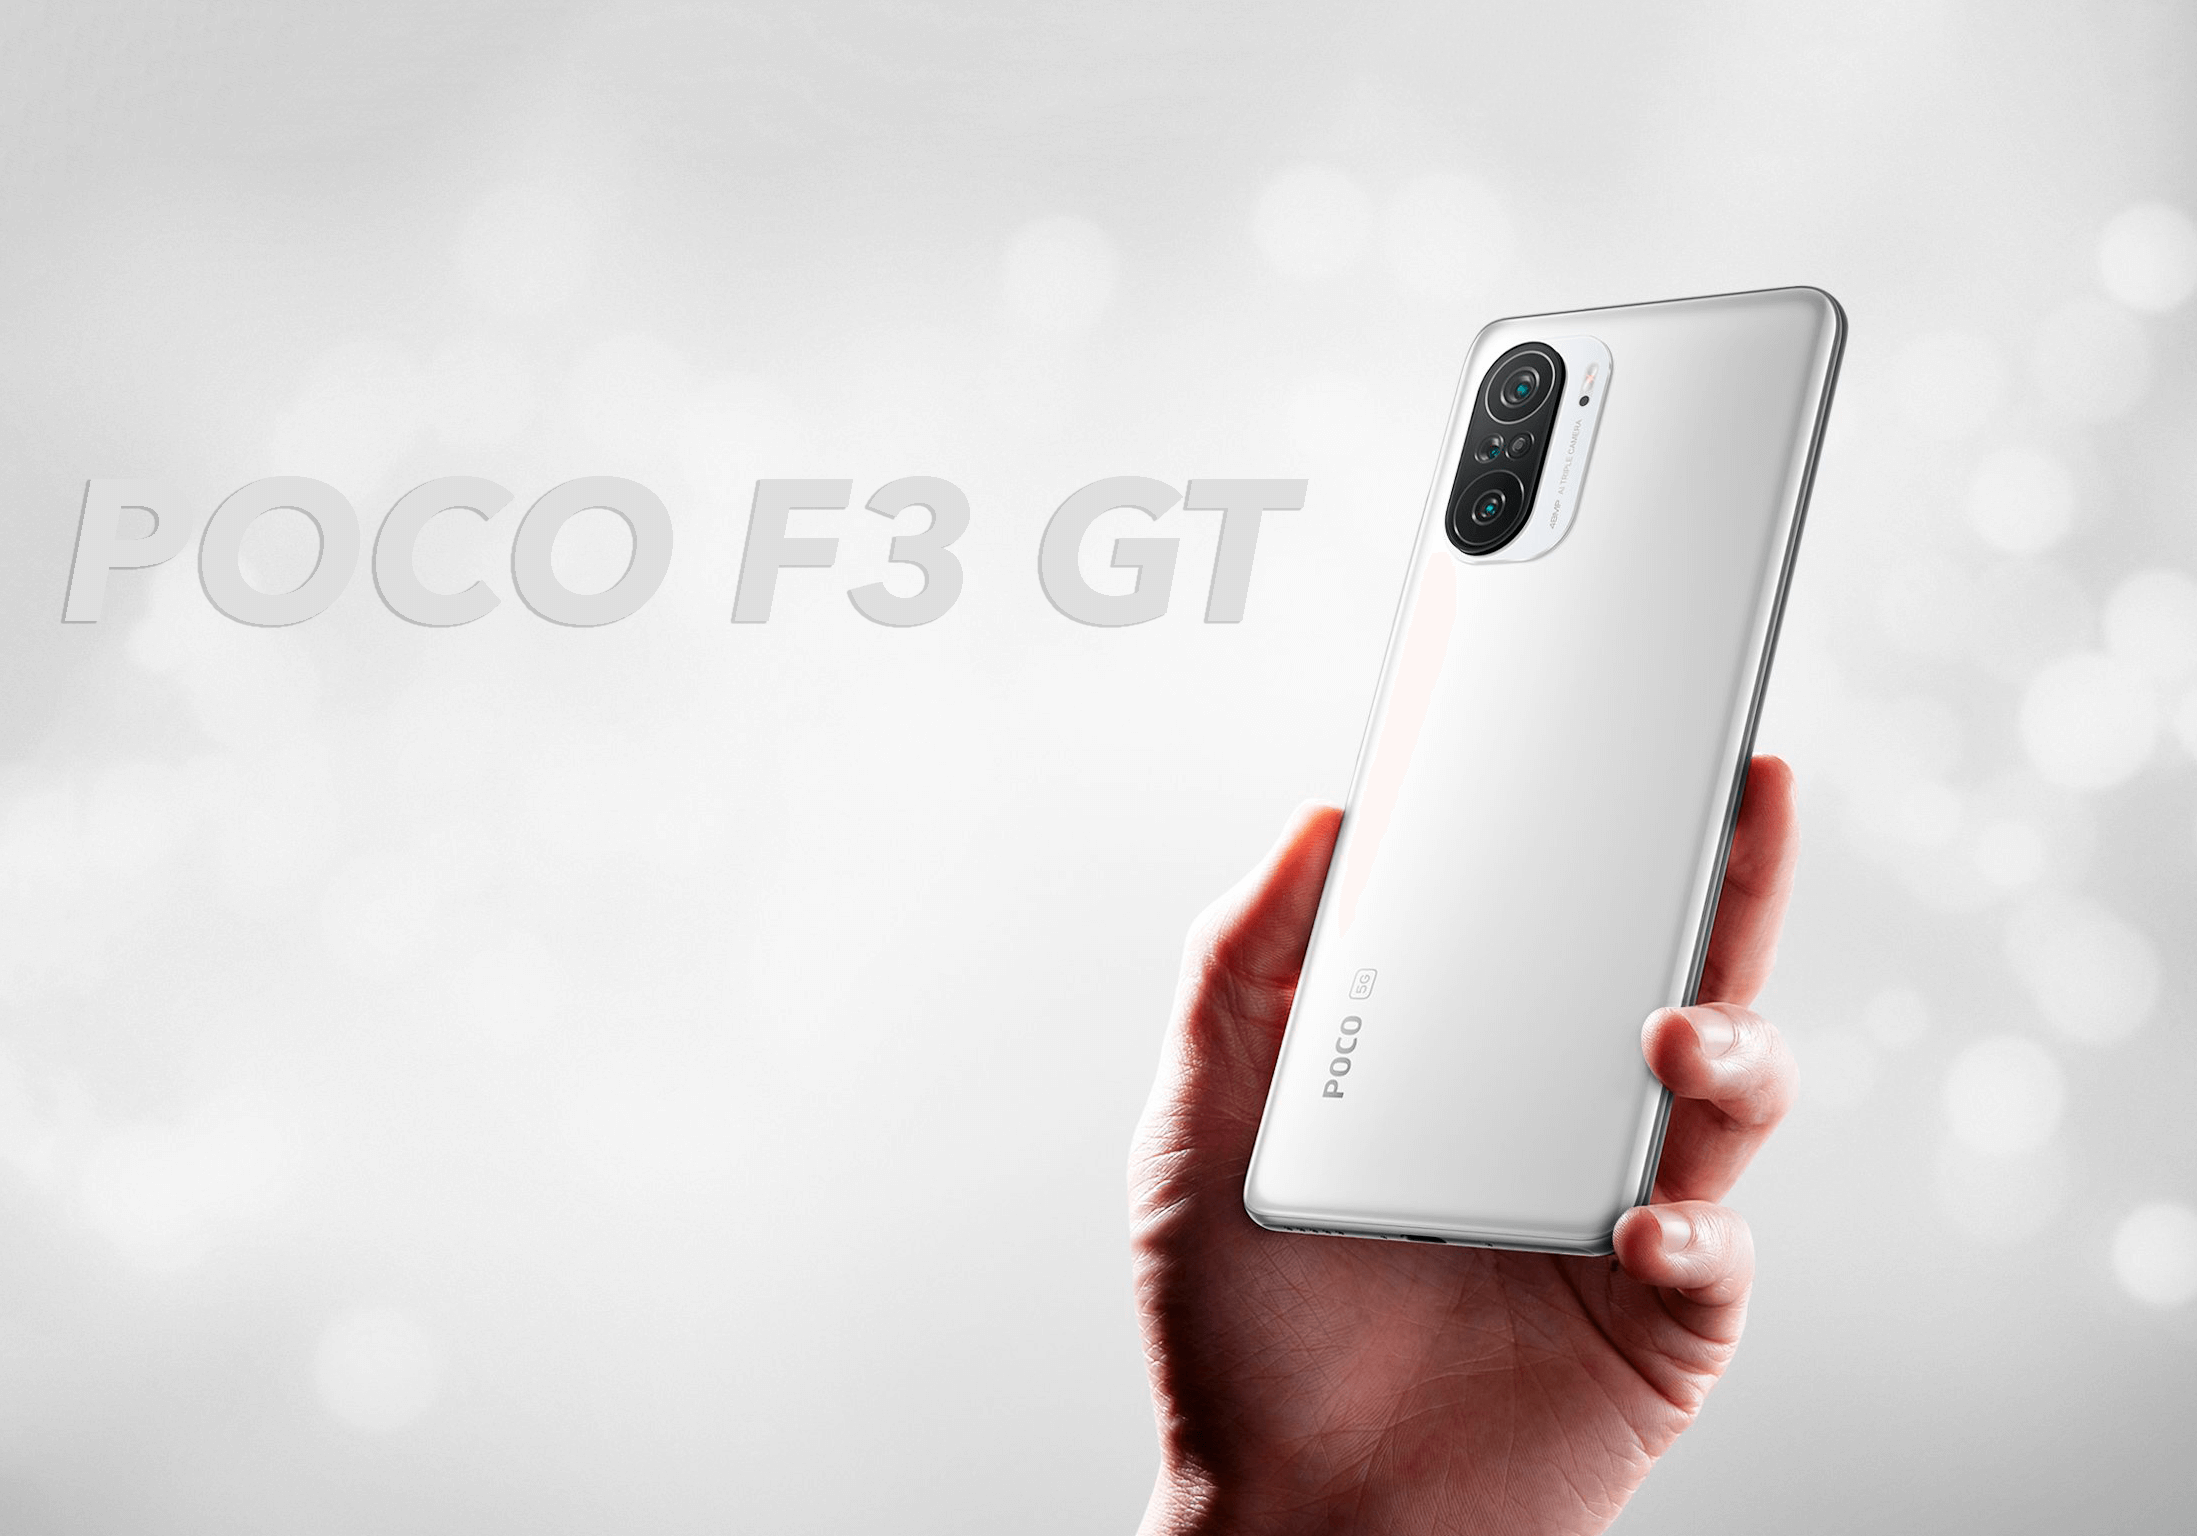 El POCO F3 GT es el nuevo móvil que vas a querer comprar si quieres un gama alta